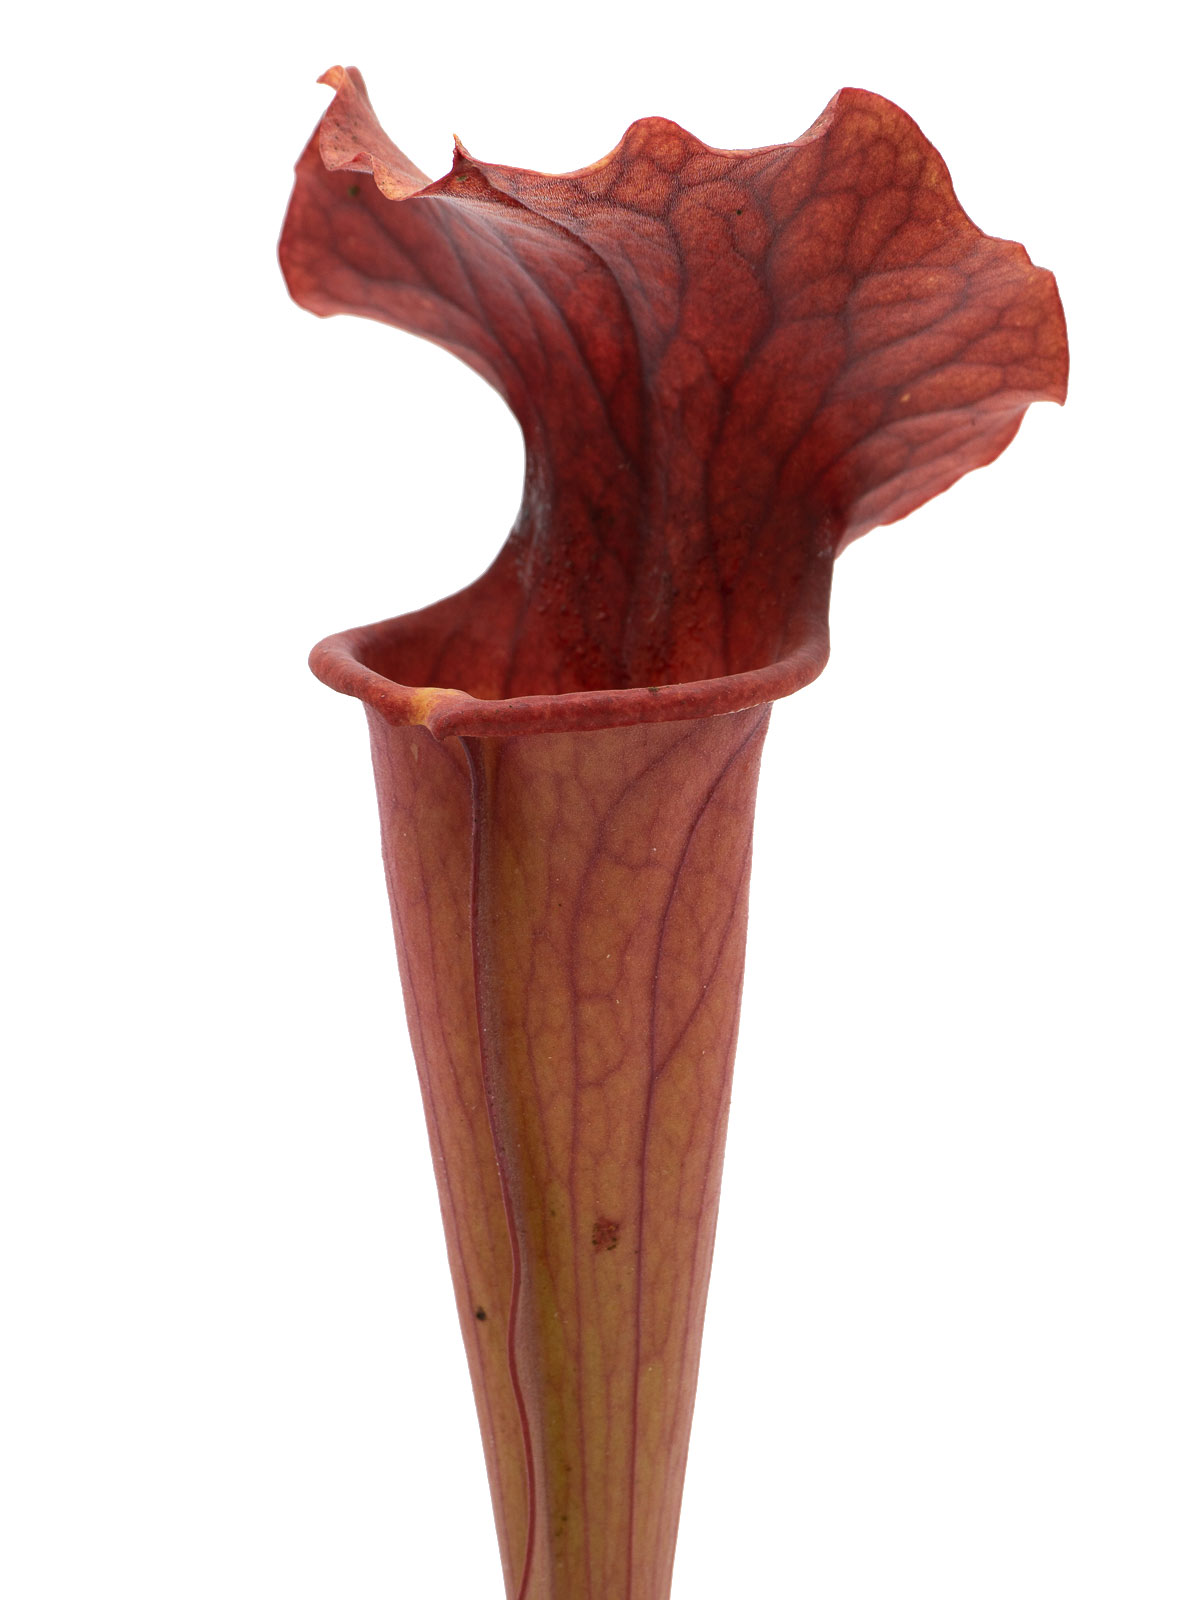 S x `Copper Vase’ - MK H116